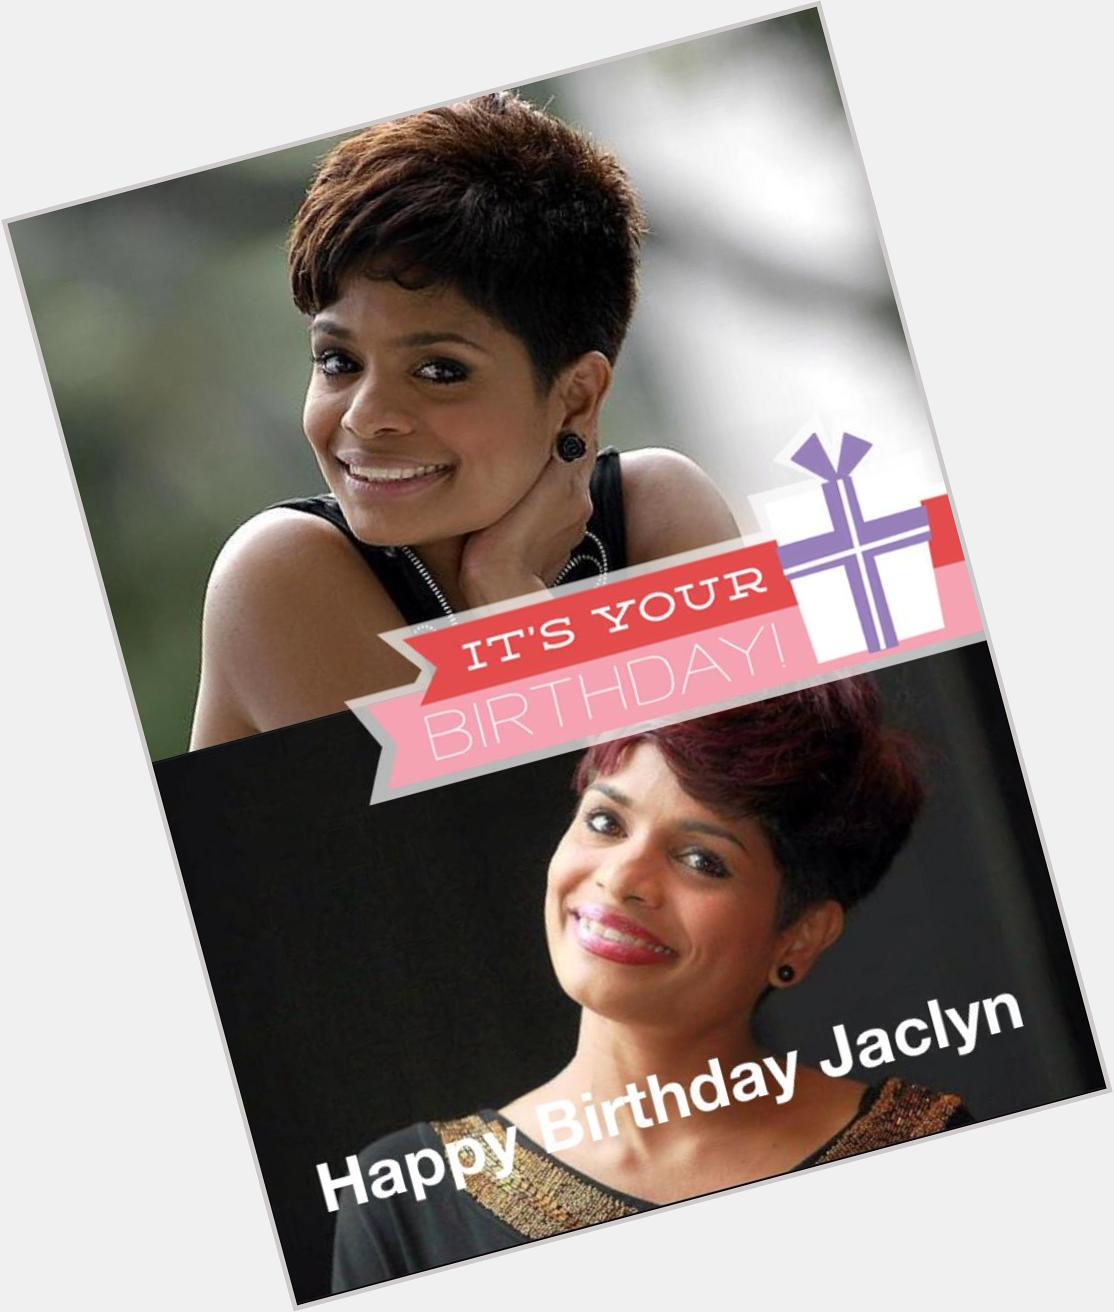  Happy Birthday Jaclyn! Have a wonderful day! :) 